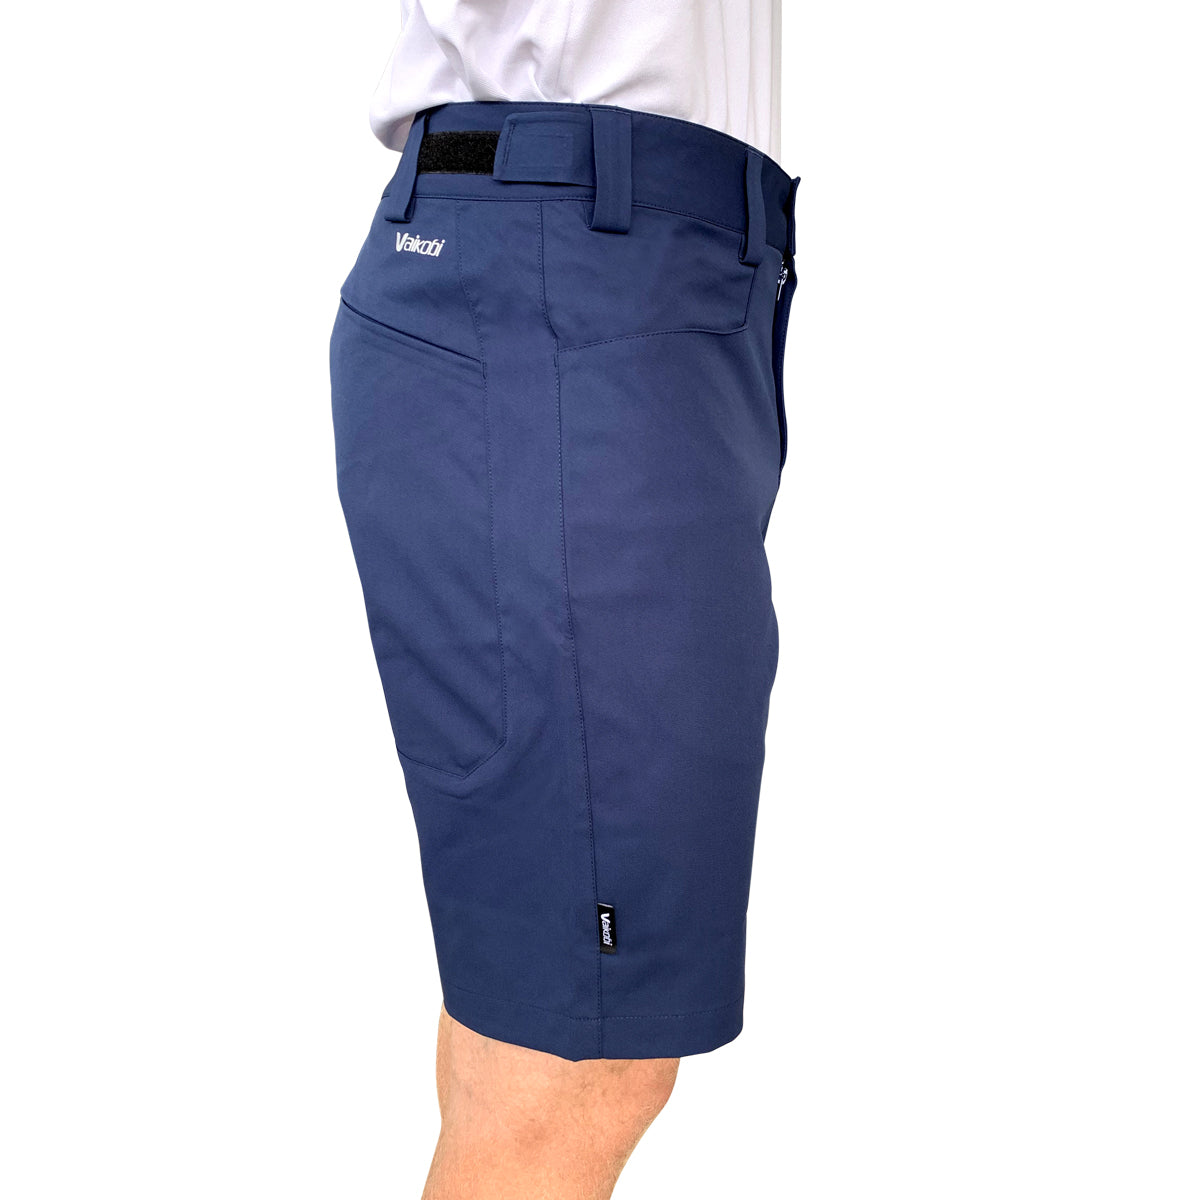 Biscayne Shorts - Navy